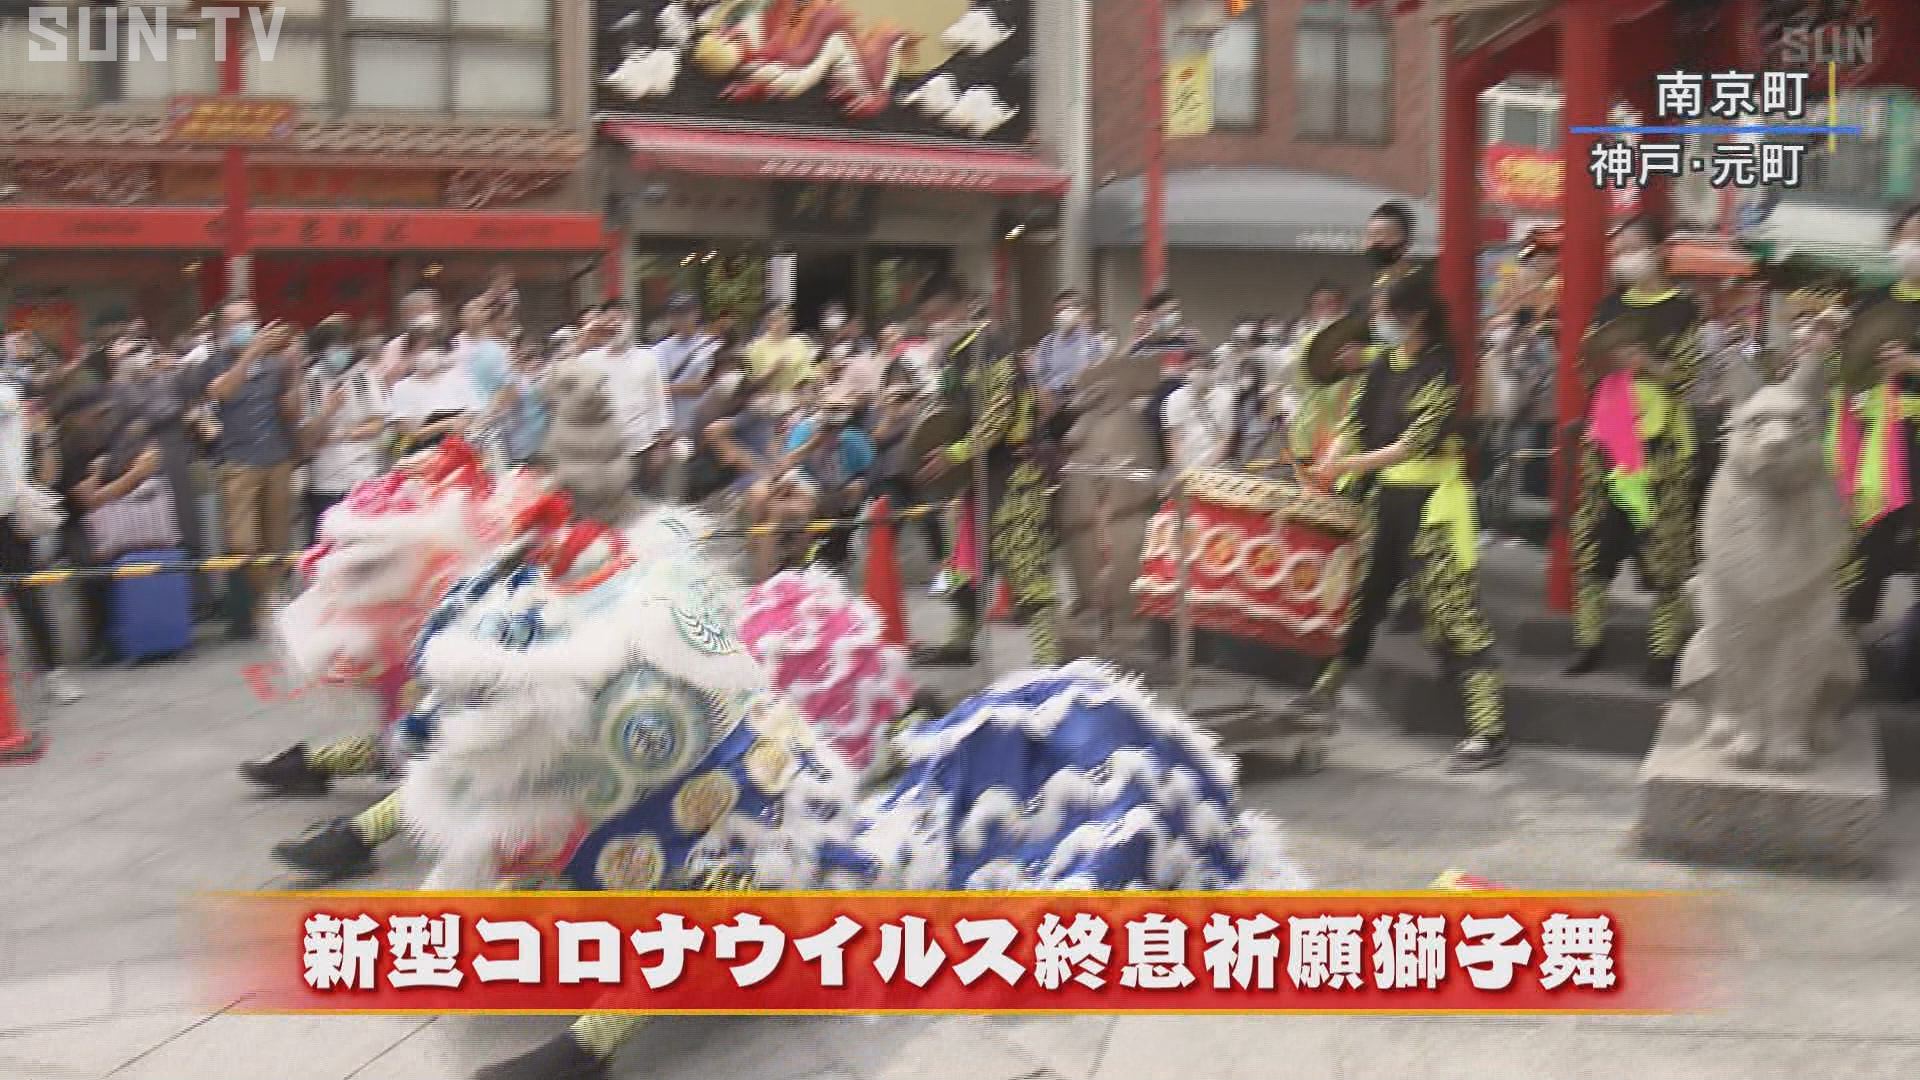 元町 横浜 ２つの中華街で獅子舞 新型コロナ終息を祈願 サンテレビニュース